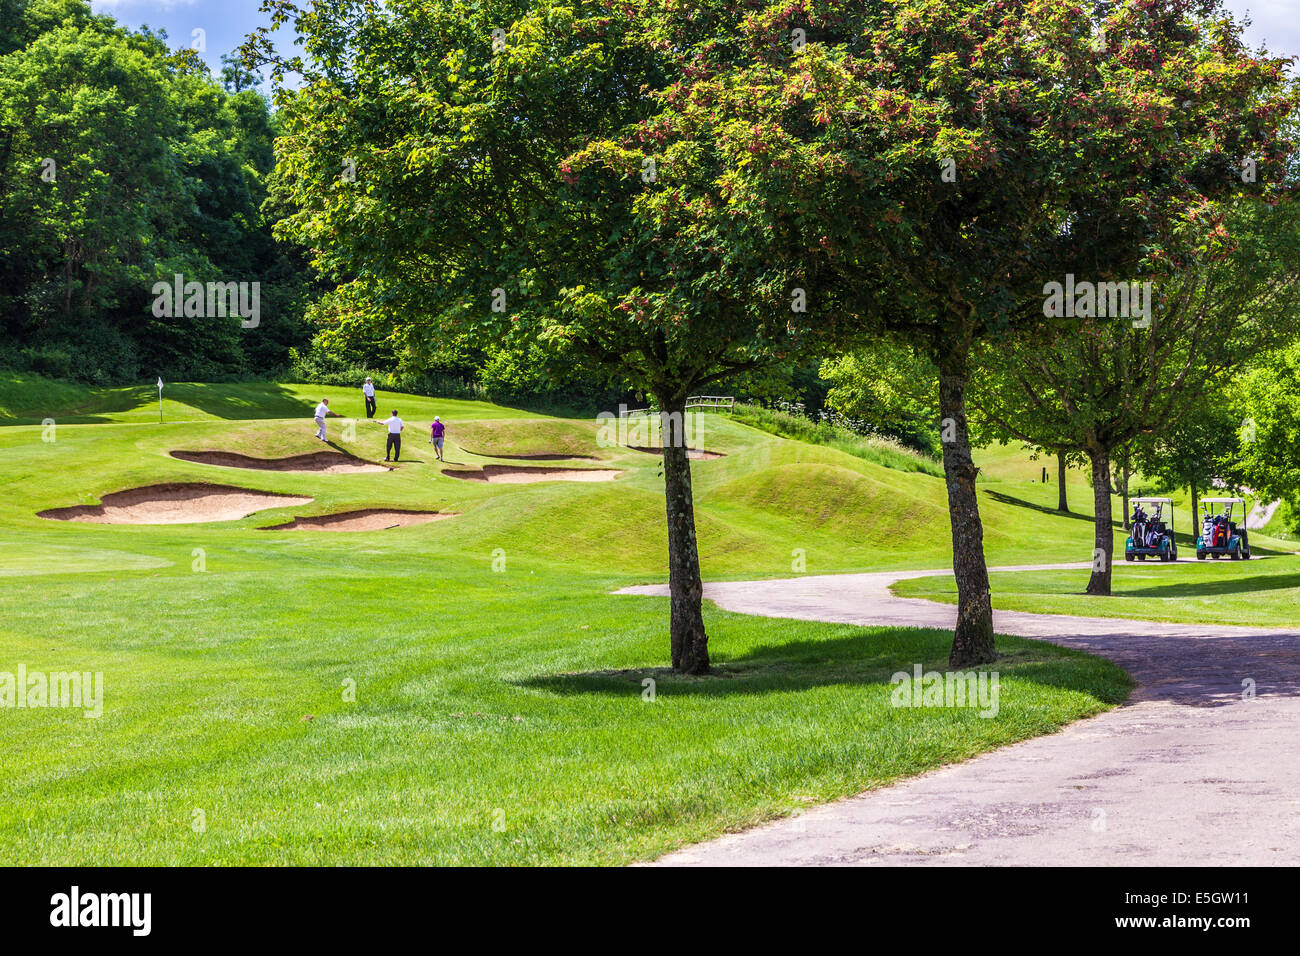 Vier männliche Golfer spielen auf einem Golfplatz in der Nähe von Bunkern. Stockfoto